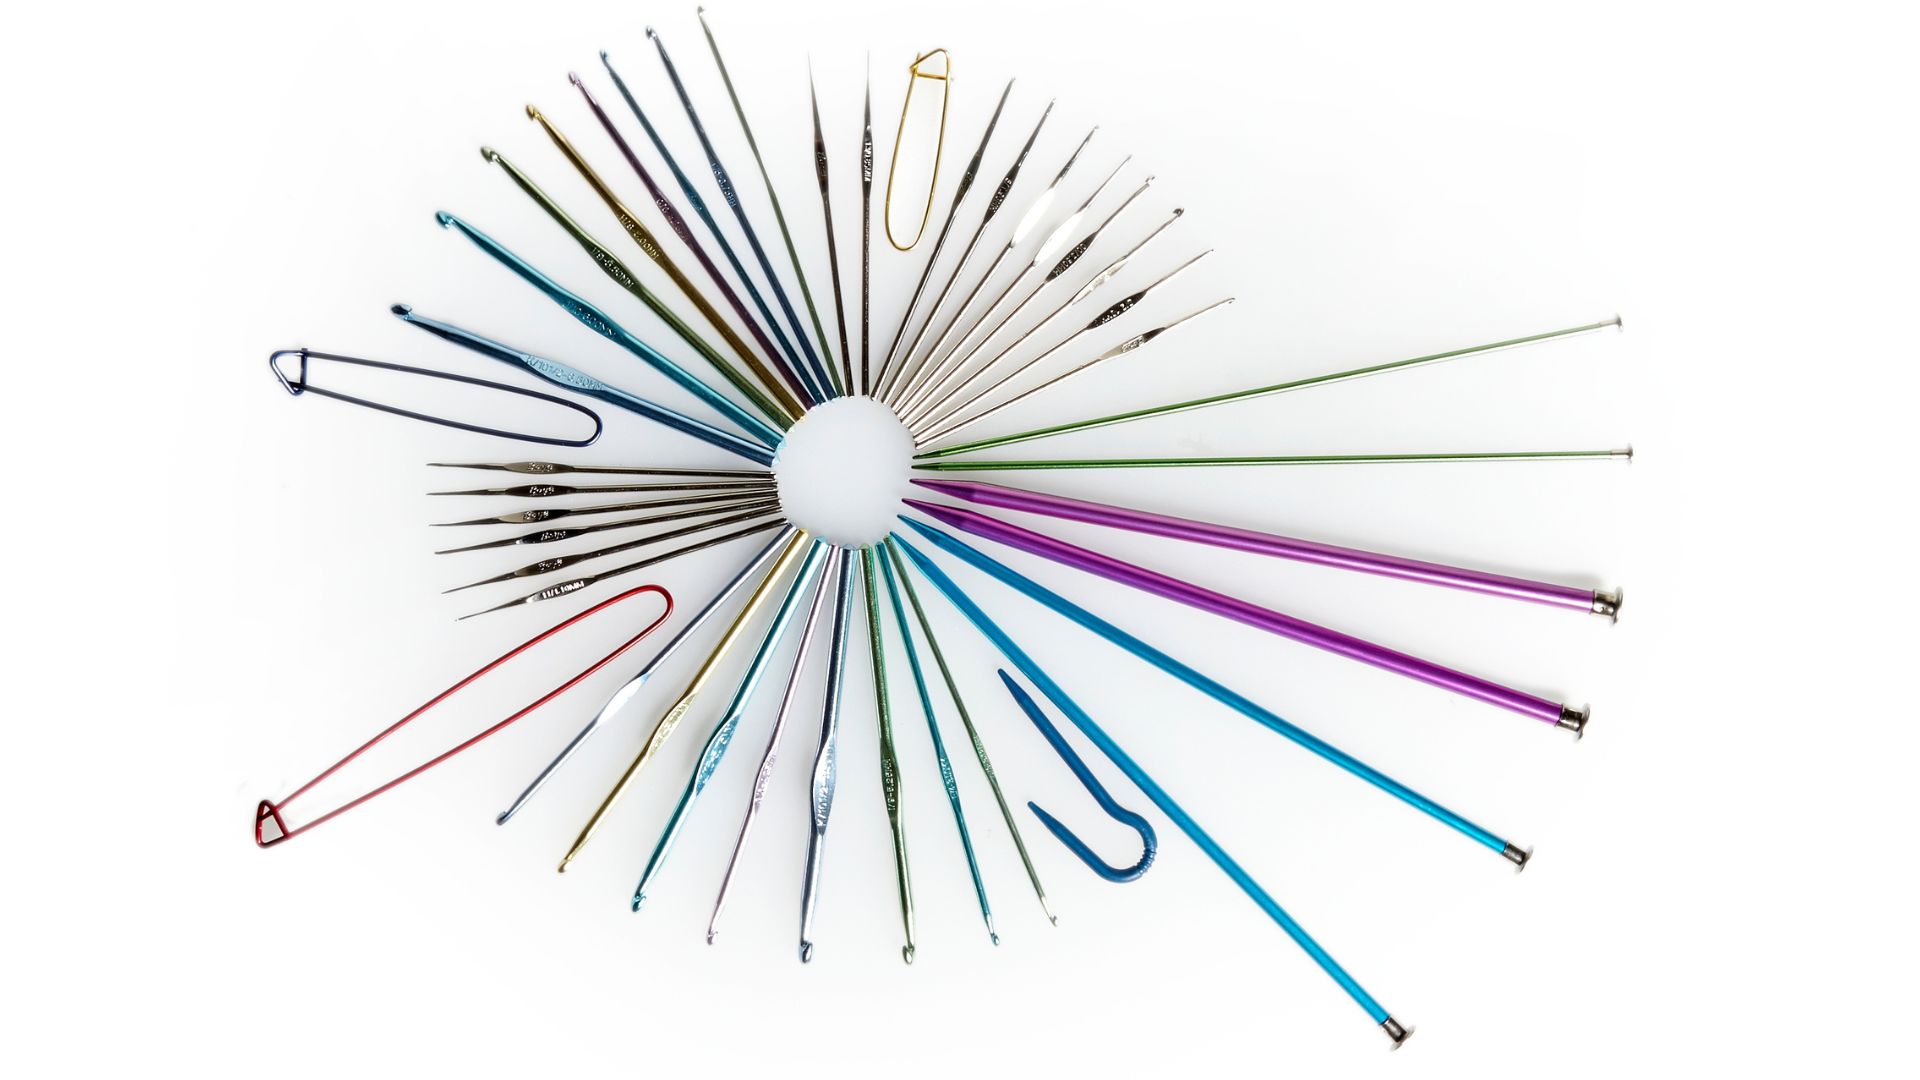 Knitting needles, crochet hooks & cable holders arranged in a mandela